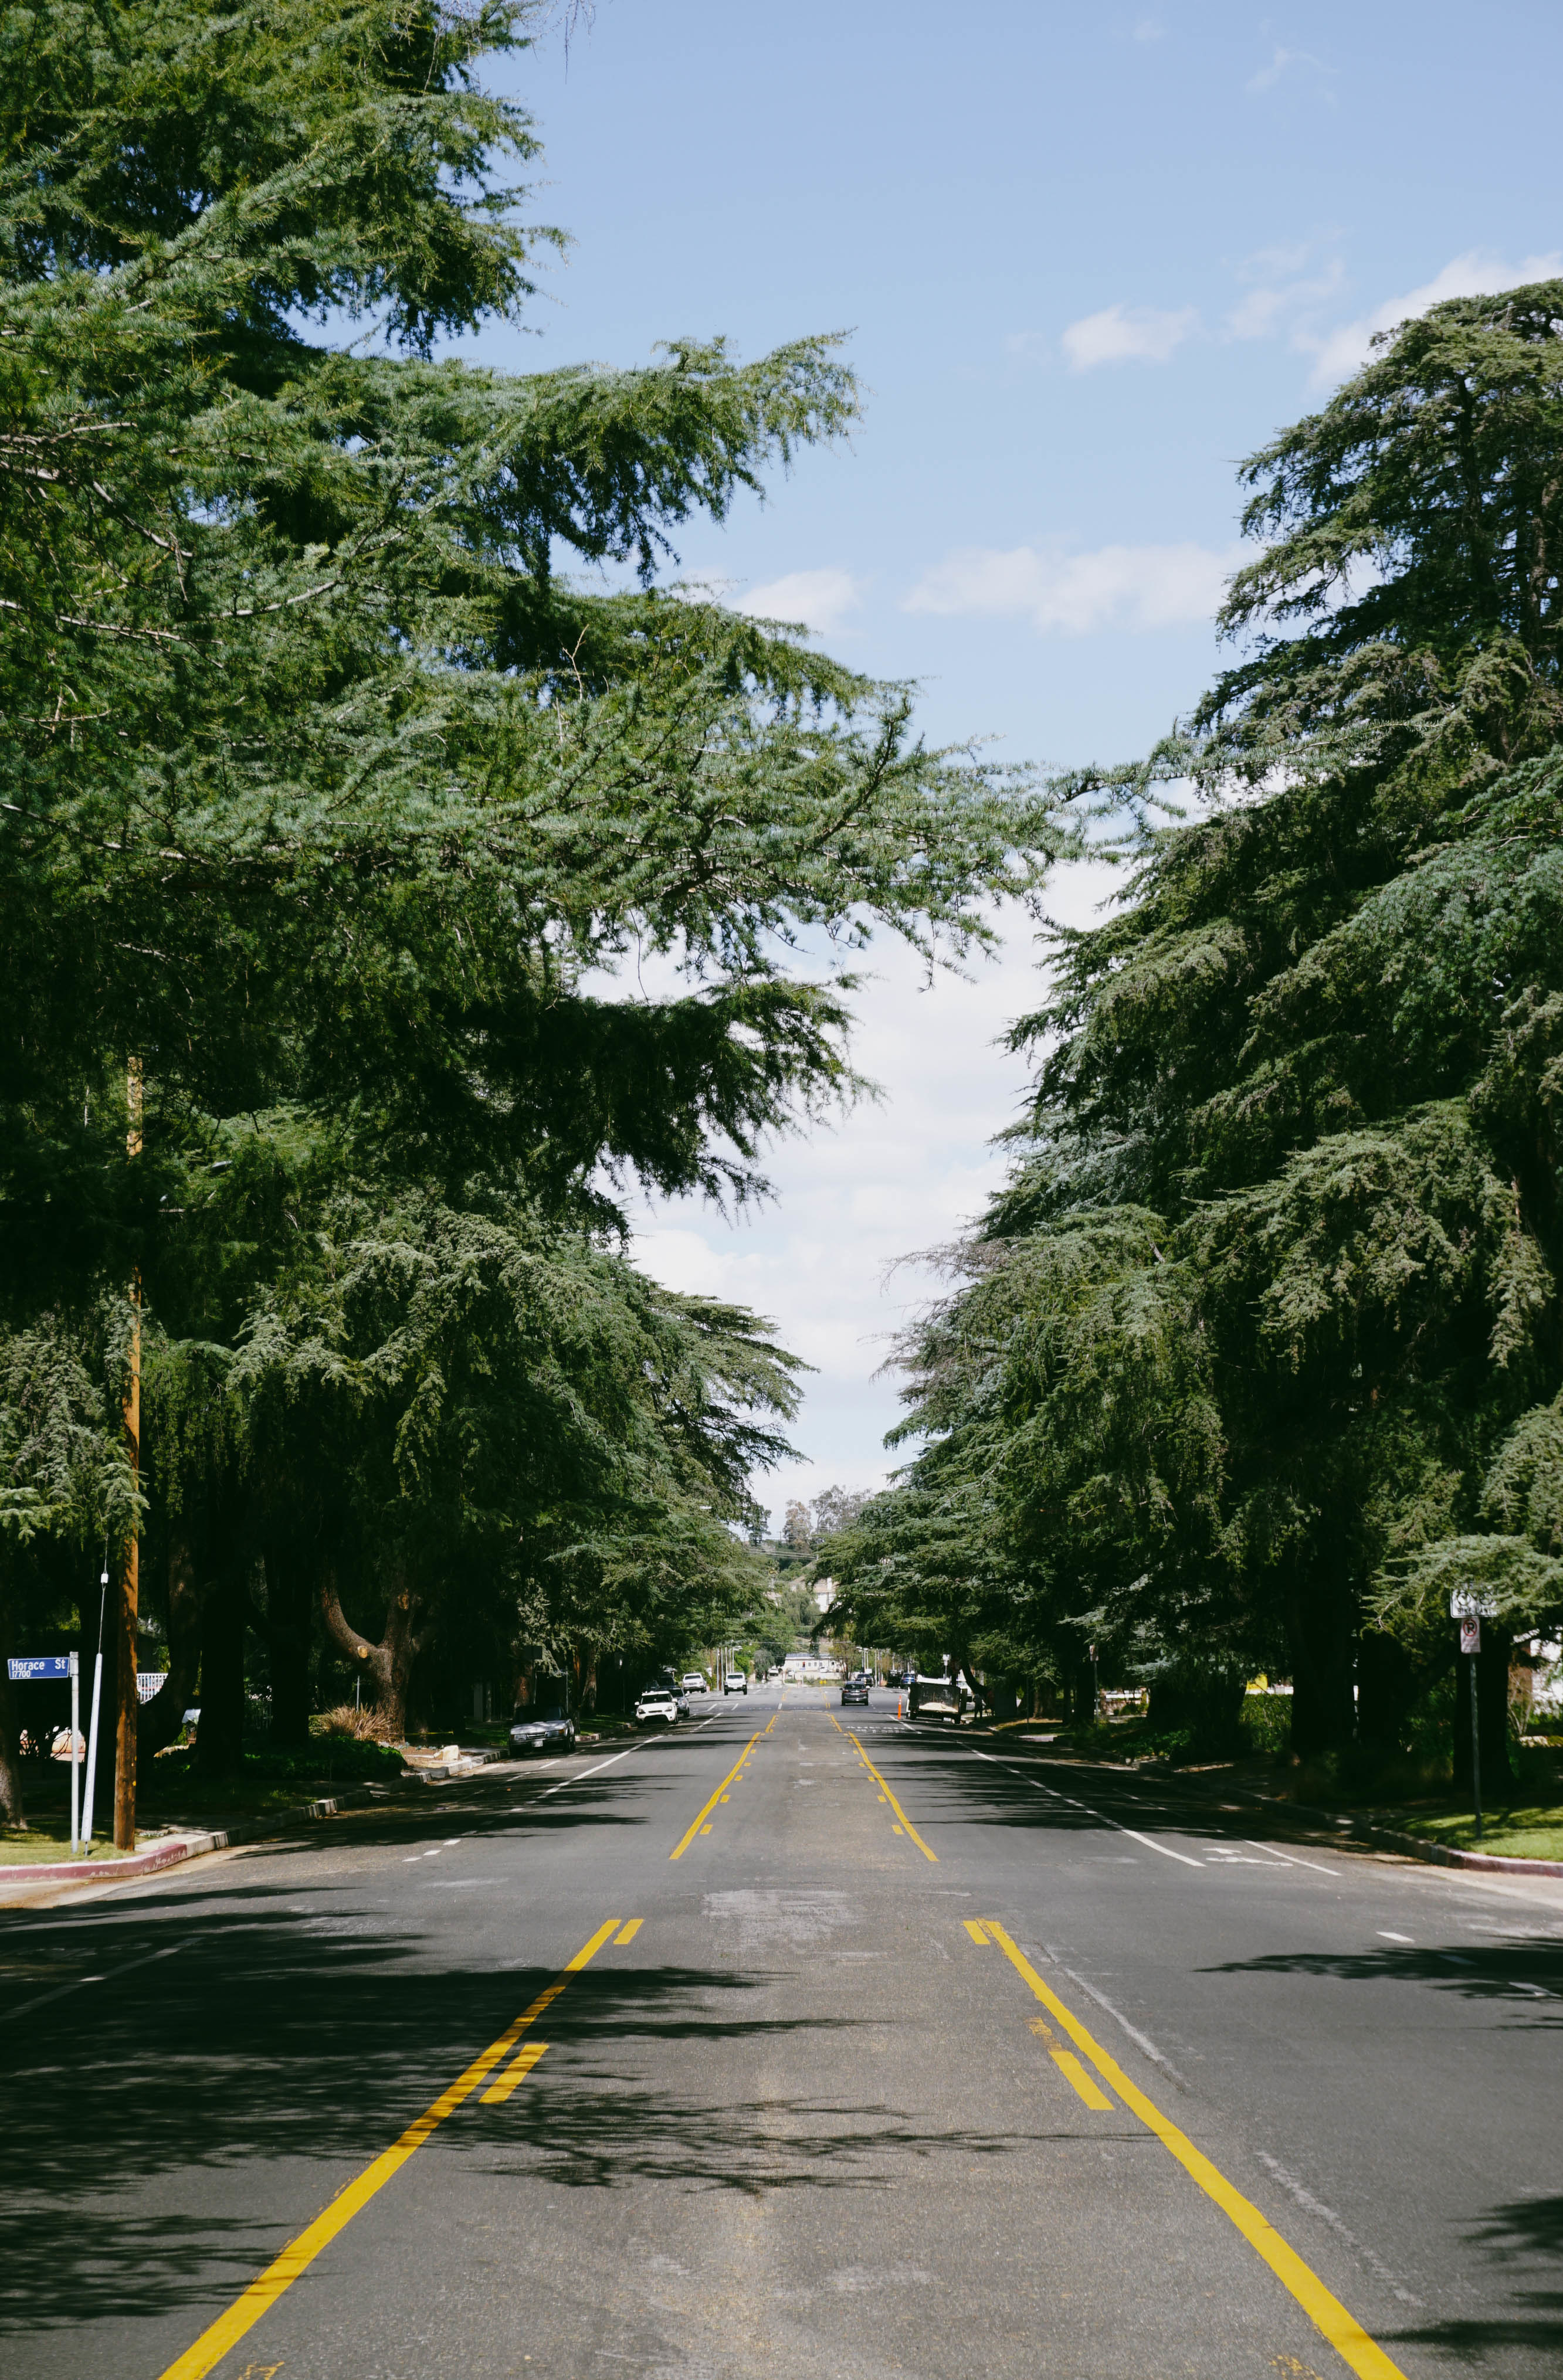 Tall cedar trees line a major street